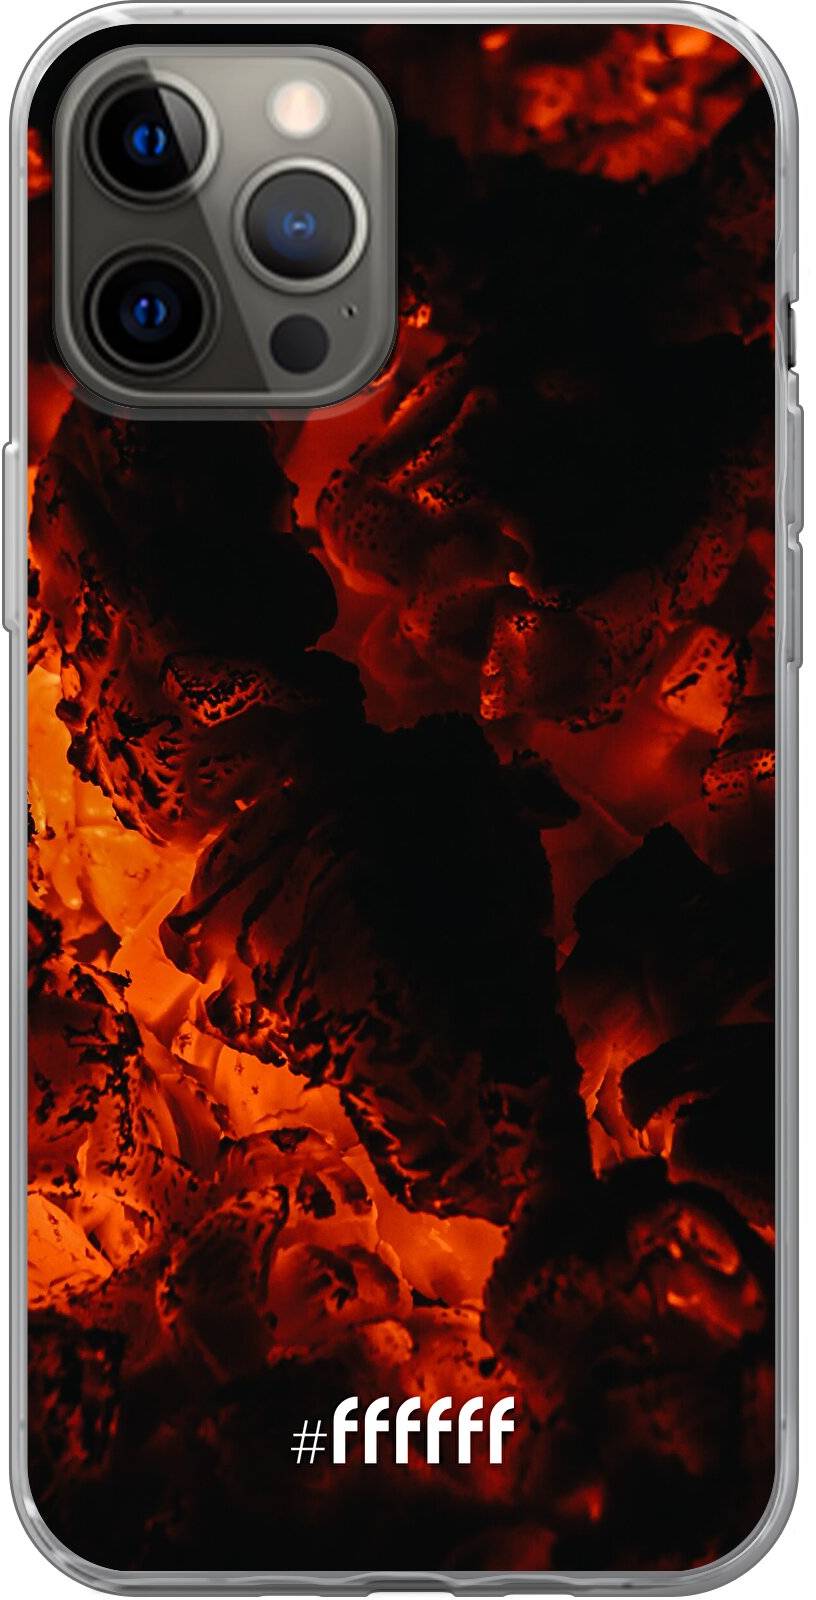 Hot Hot Hot iPhone 12 Pro Max